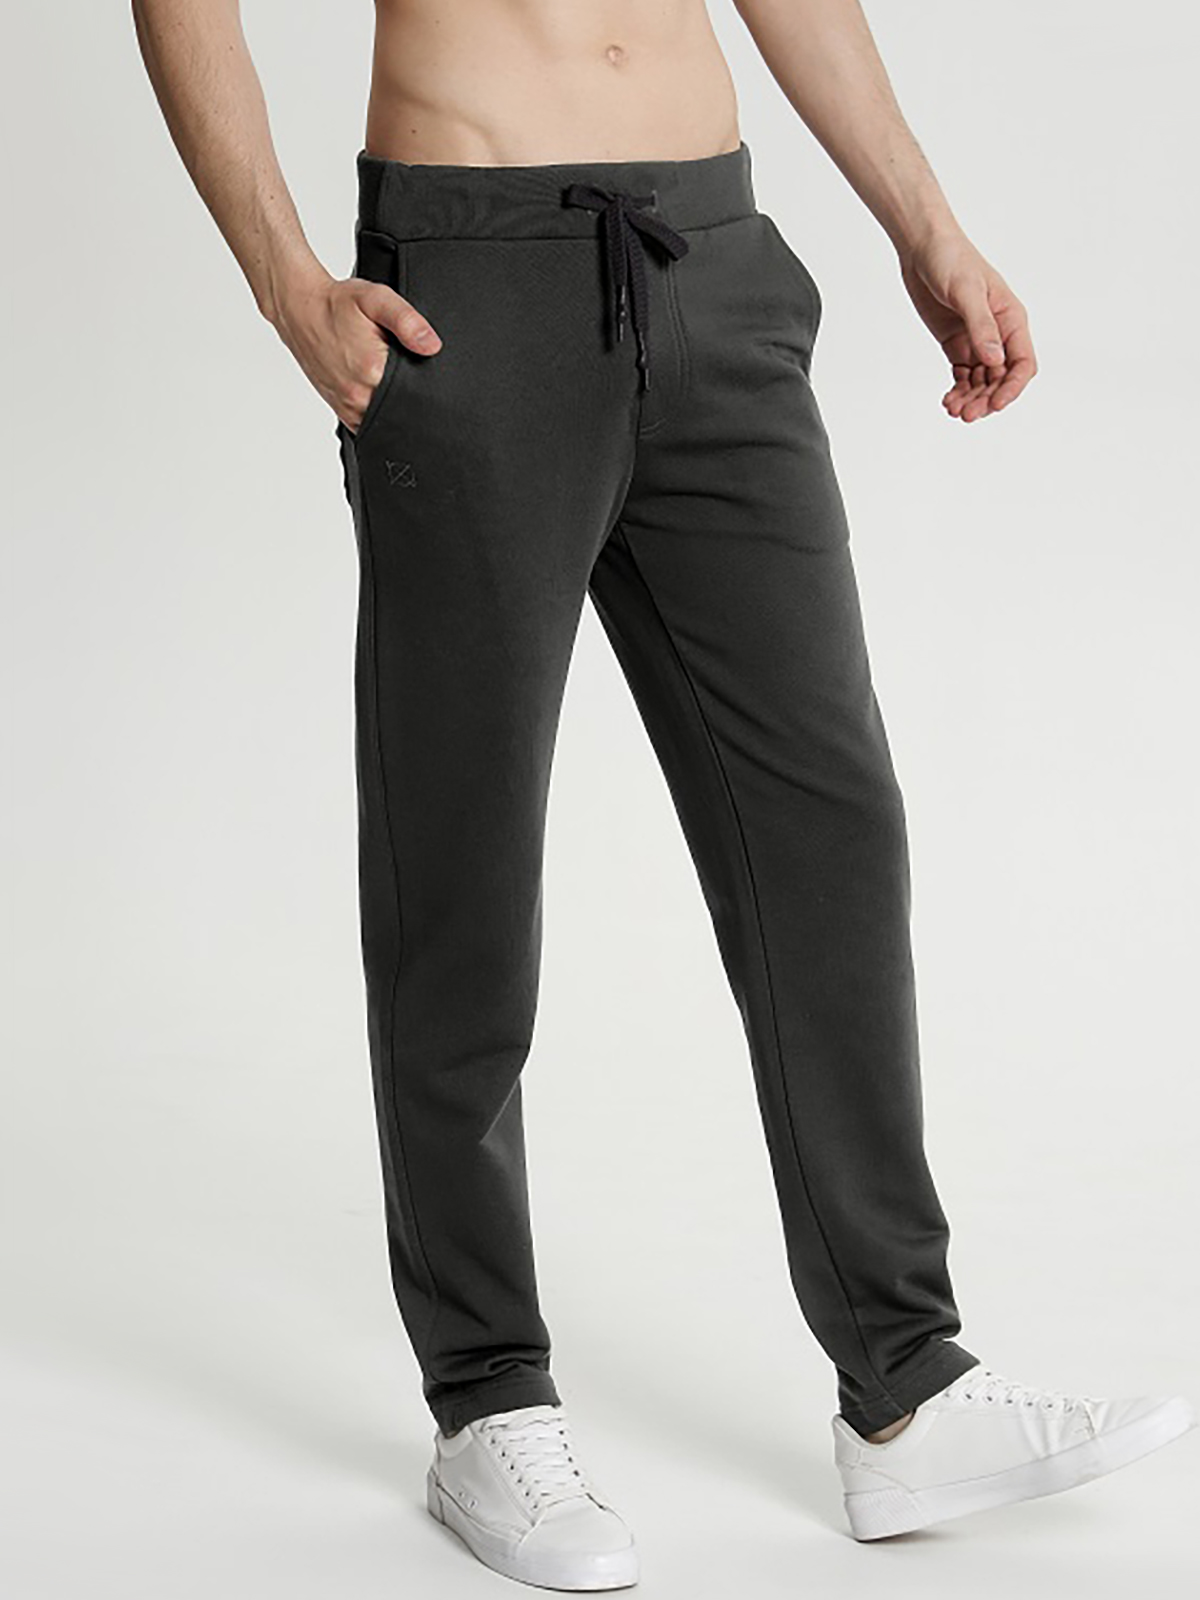 Спортивные брюки мужские Oxouno OXO 2382-376 серые 2XL